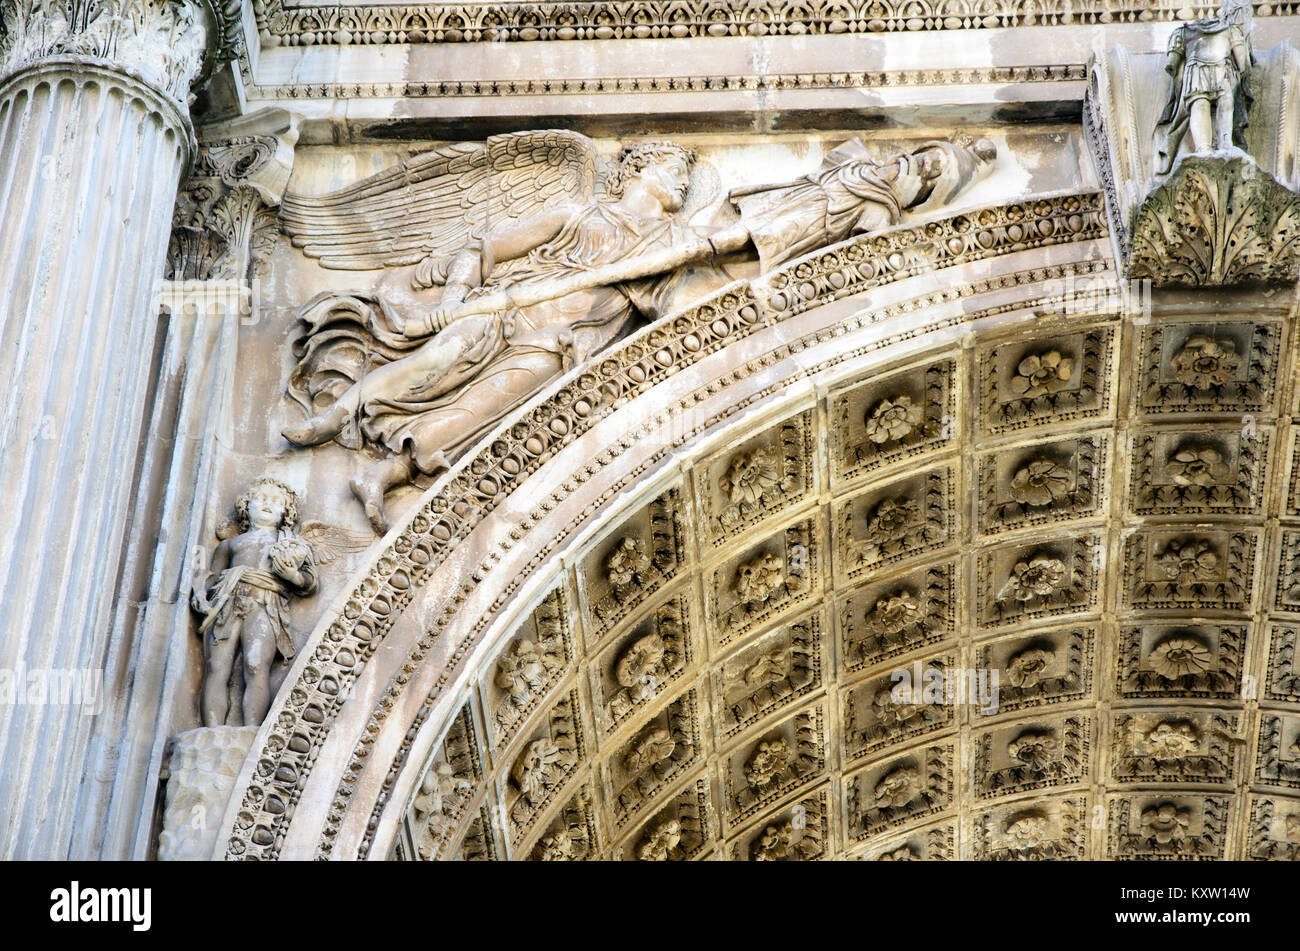 Dettaglio dell'Arco di Settimio Severo di una Vittoria alata che trasporta i trofei - Foro Romano - Roma, Italia Foto Stock